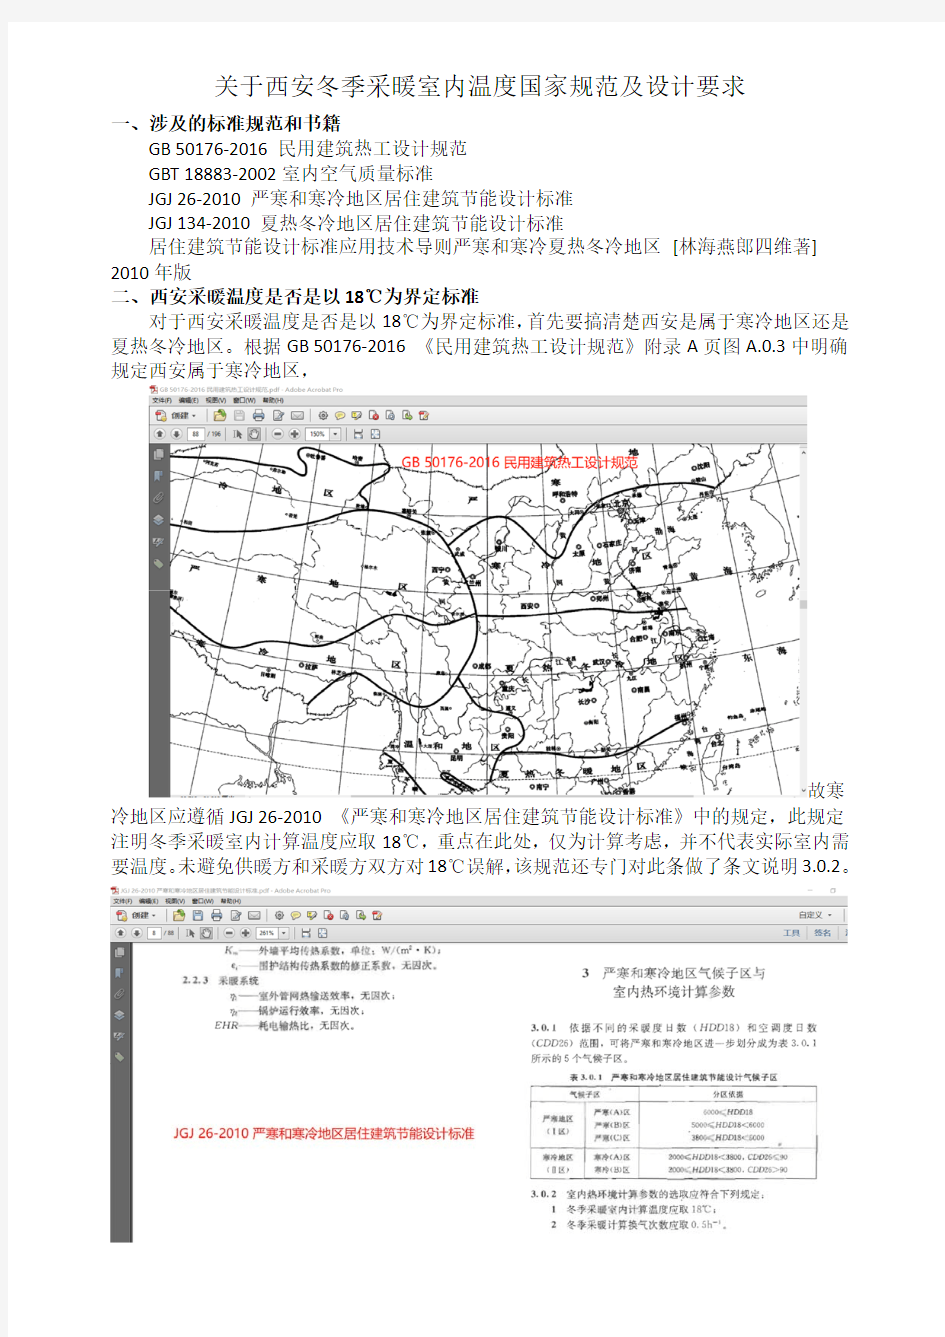 关于西安市冬季采暖国家规范及设计要求2019.11.22.pdf